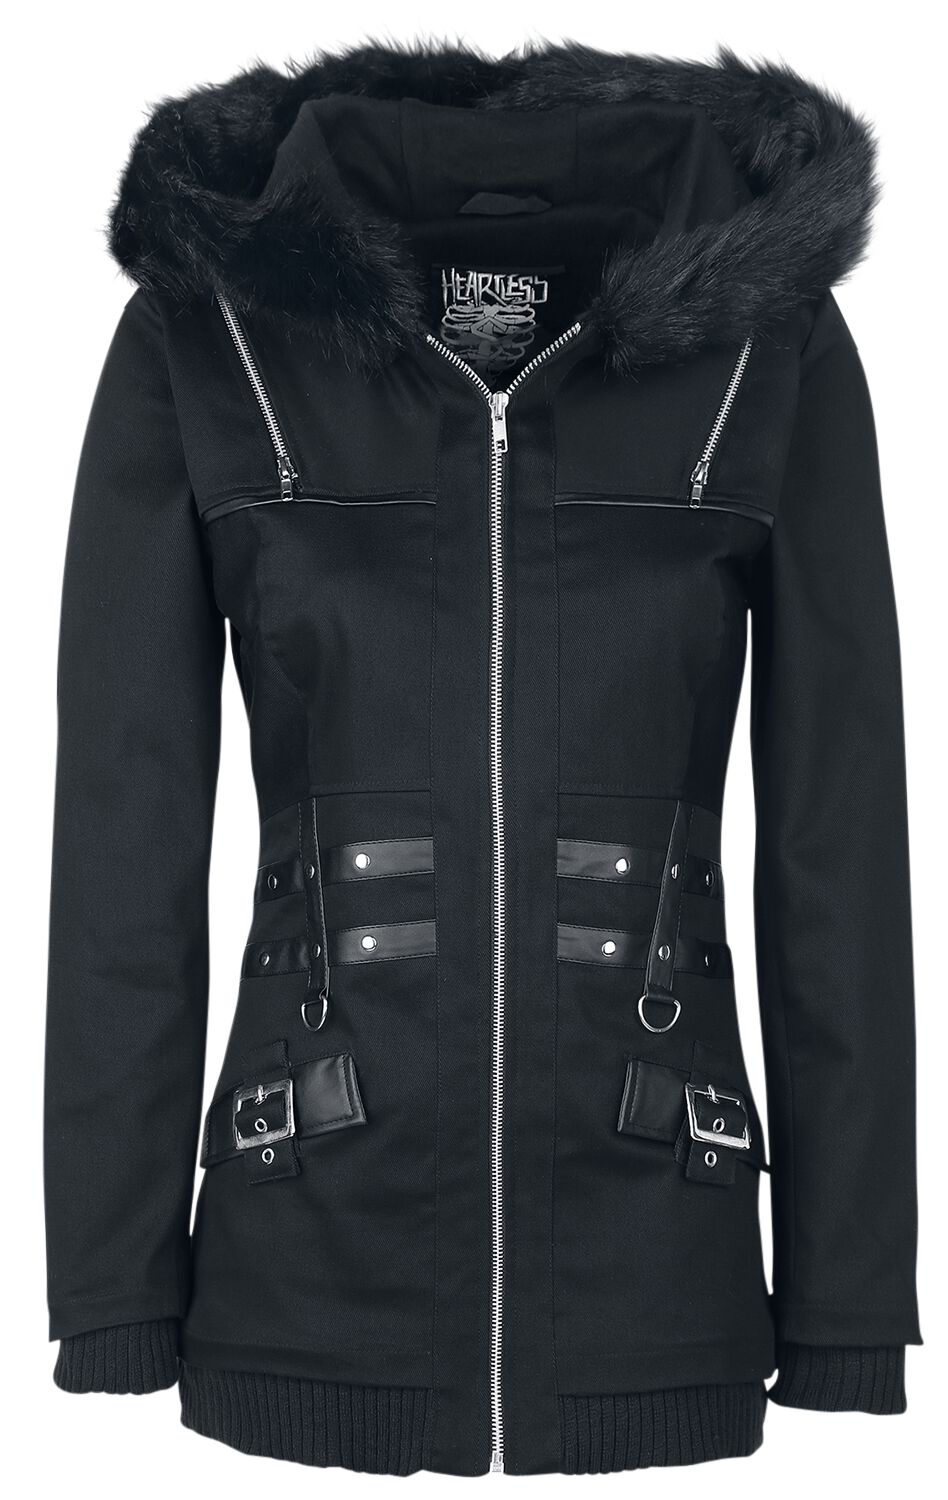 Heartless - Gothic Übergangsjacke - Sara Jacket - XS bis XL - für Damen - Größe L - schwarz